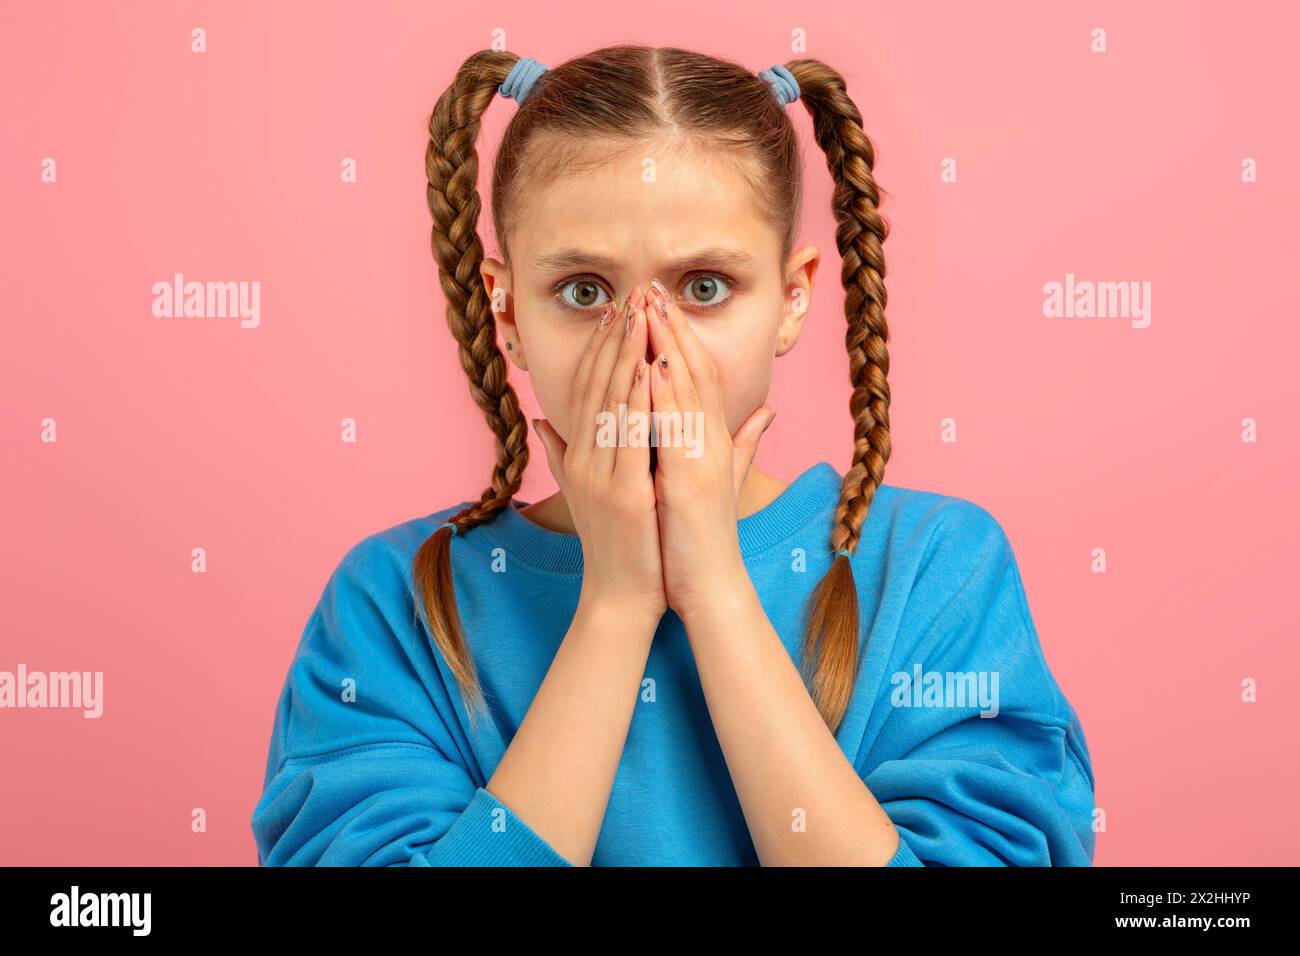 Sorpresa adolescente che copre la bocca con le mani su sfondo rosa Foto Stock